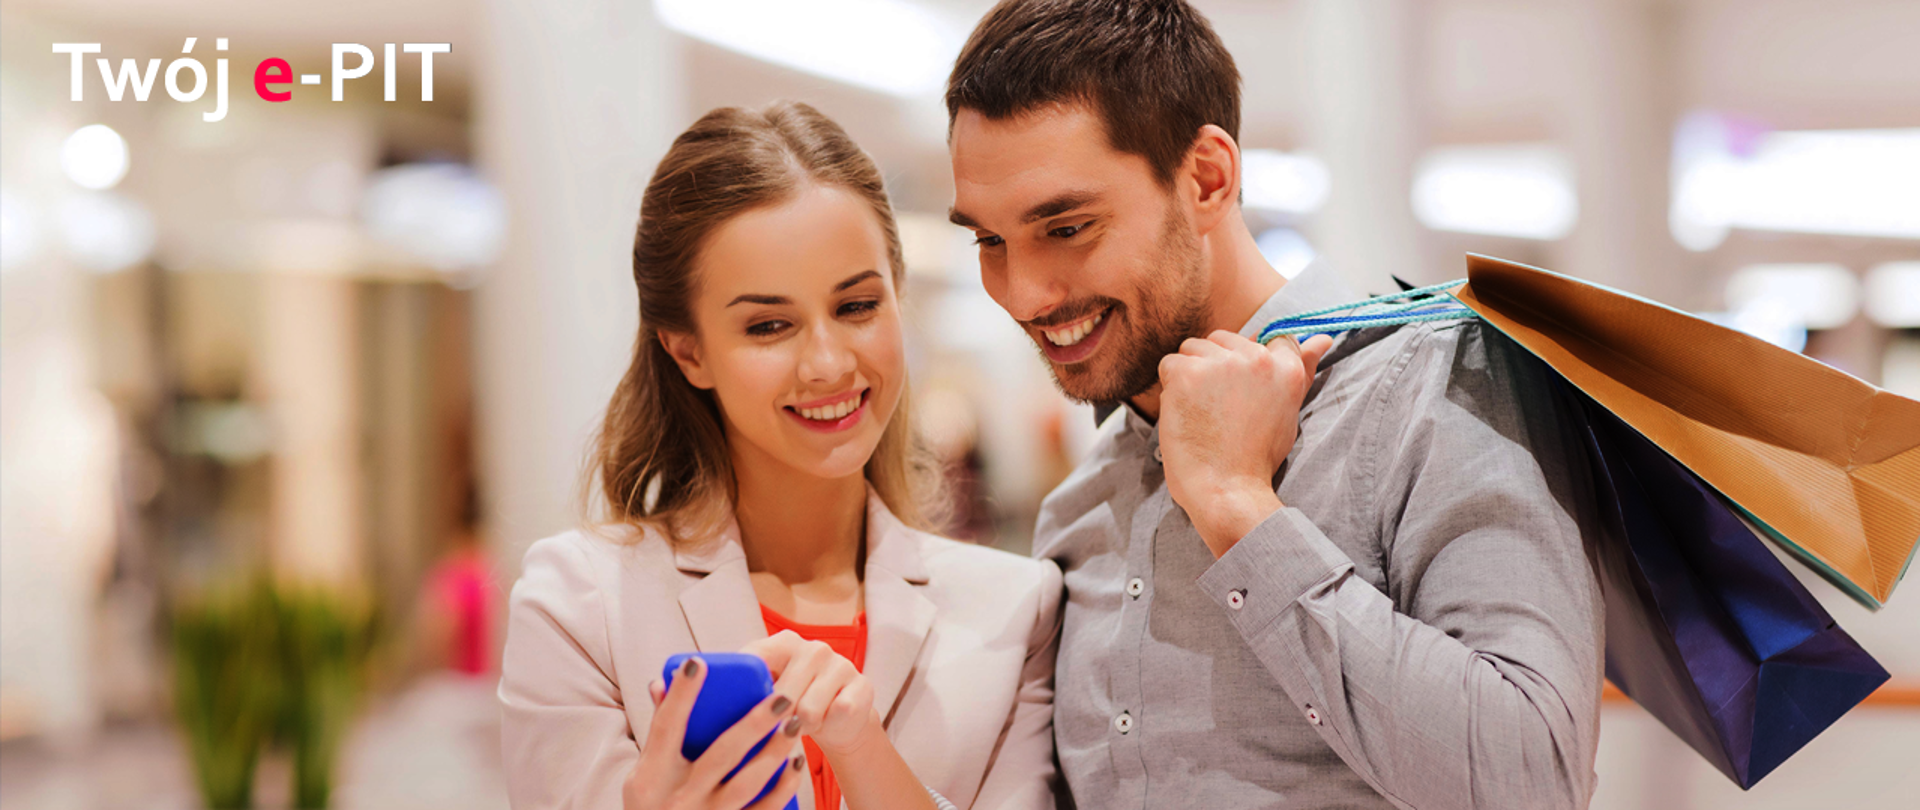 Mężczyzna trzymający torbę i kobieta patrzą uśmiechnięci na telefon komórkowy na tle galerii handlowej. W górnym lewym rogu napis "Twój e-PIT"